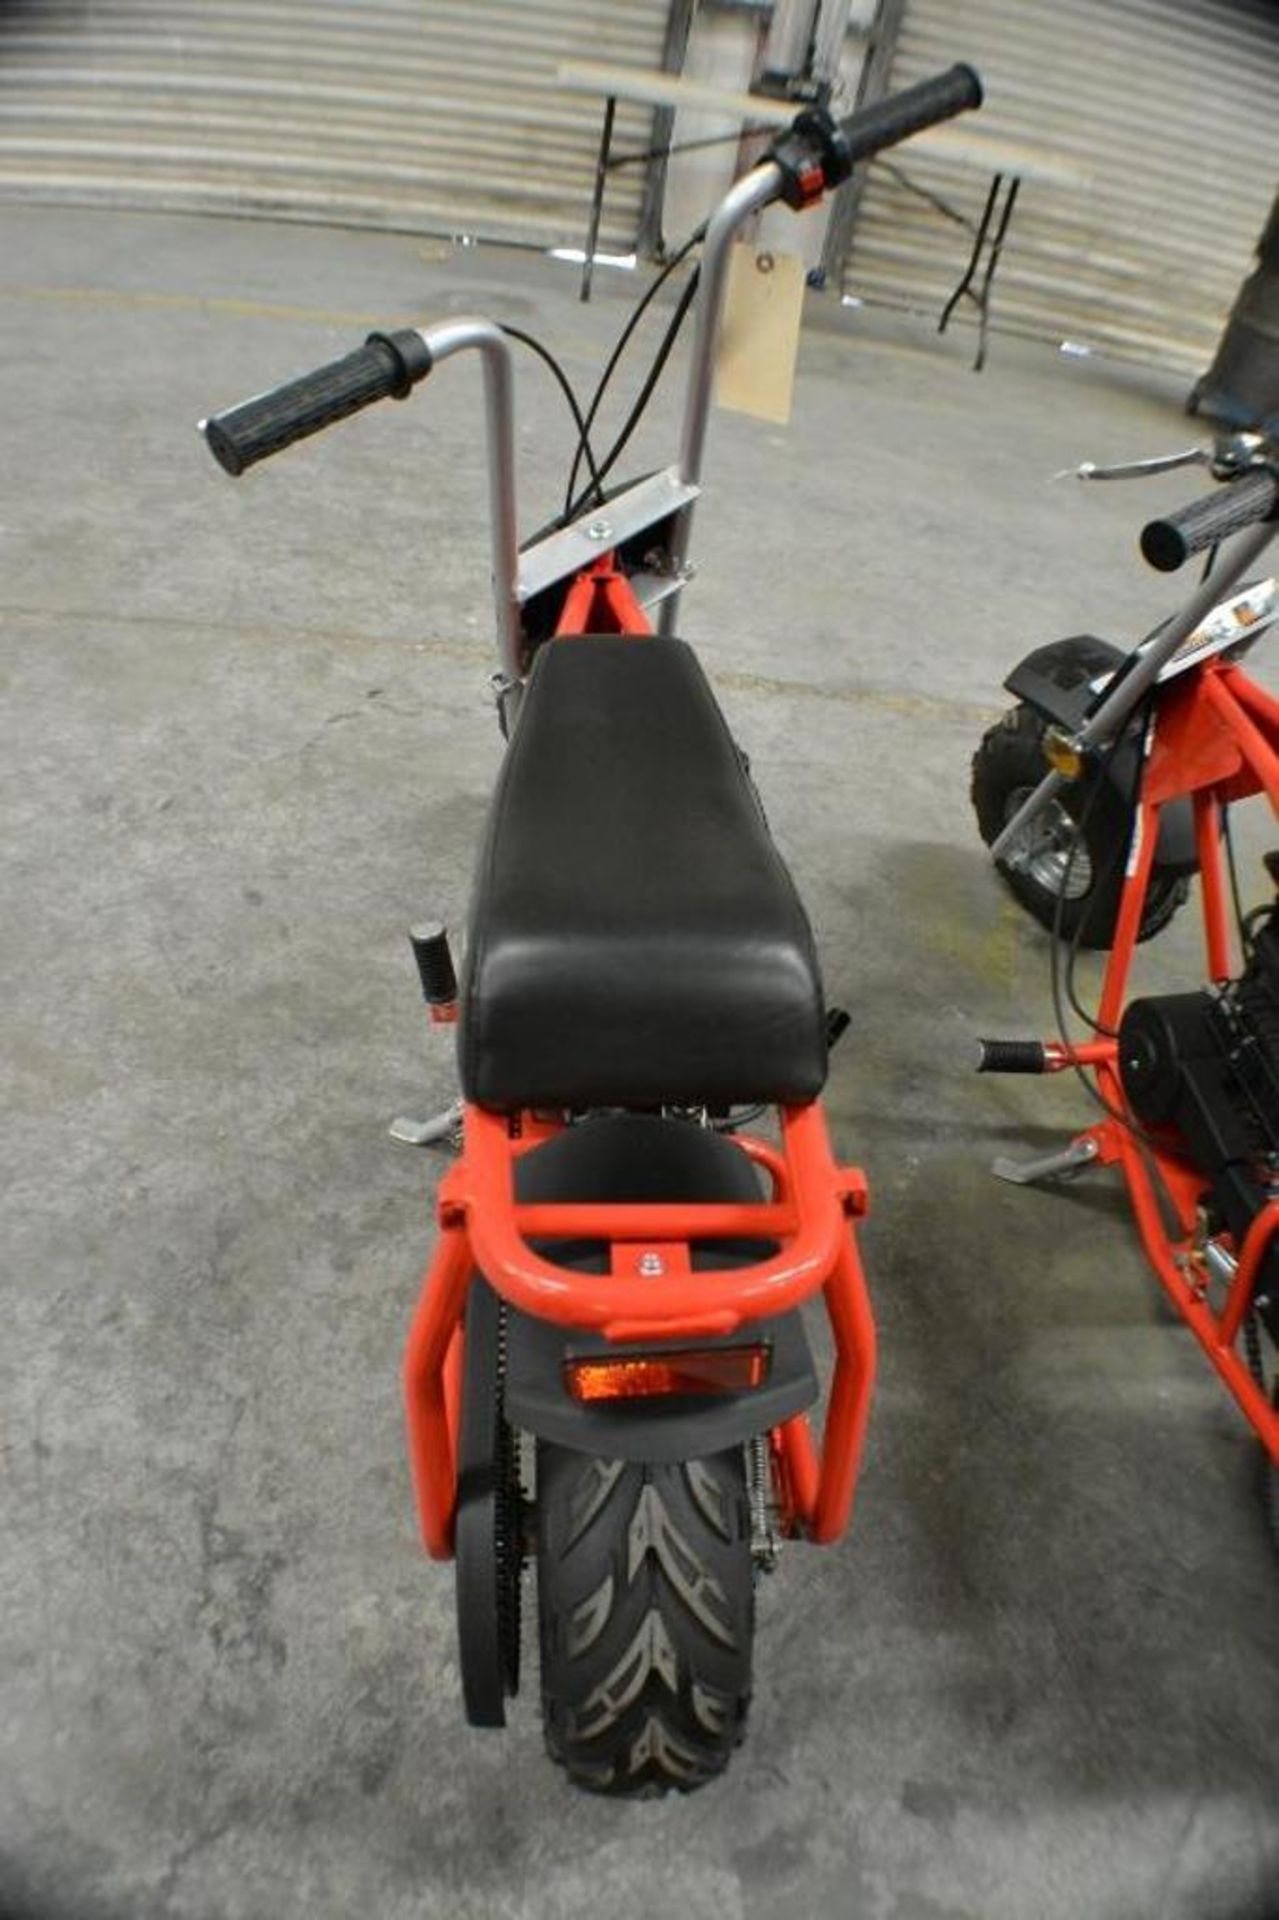 Mini Bike 97cc 4 Stroke Red/ Black Color - Image 5 of 5